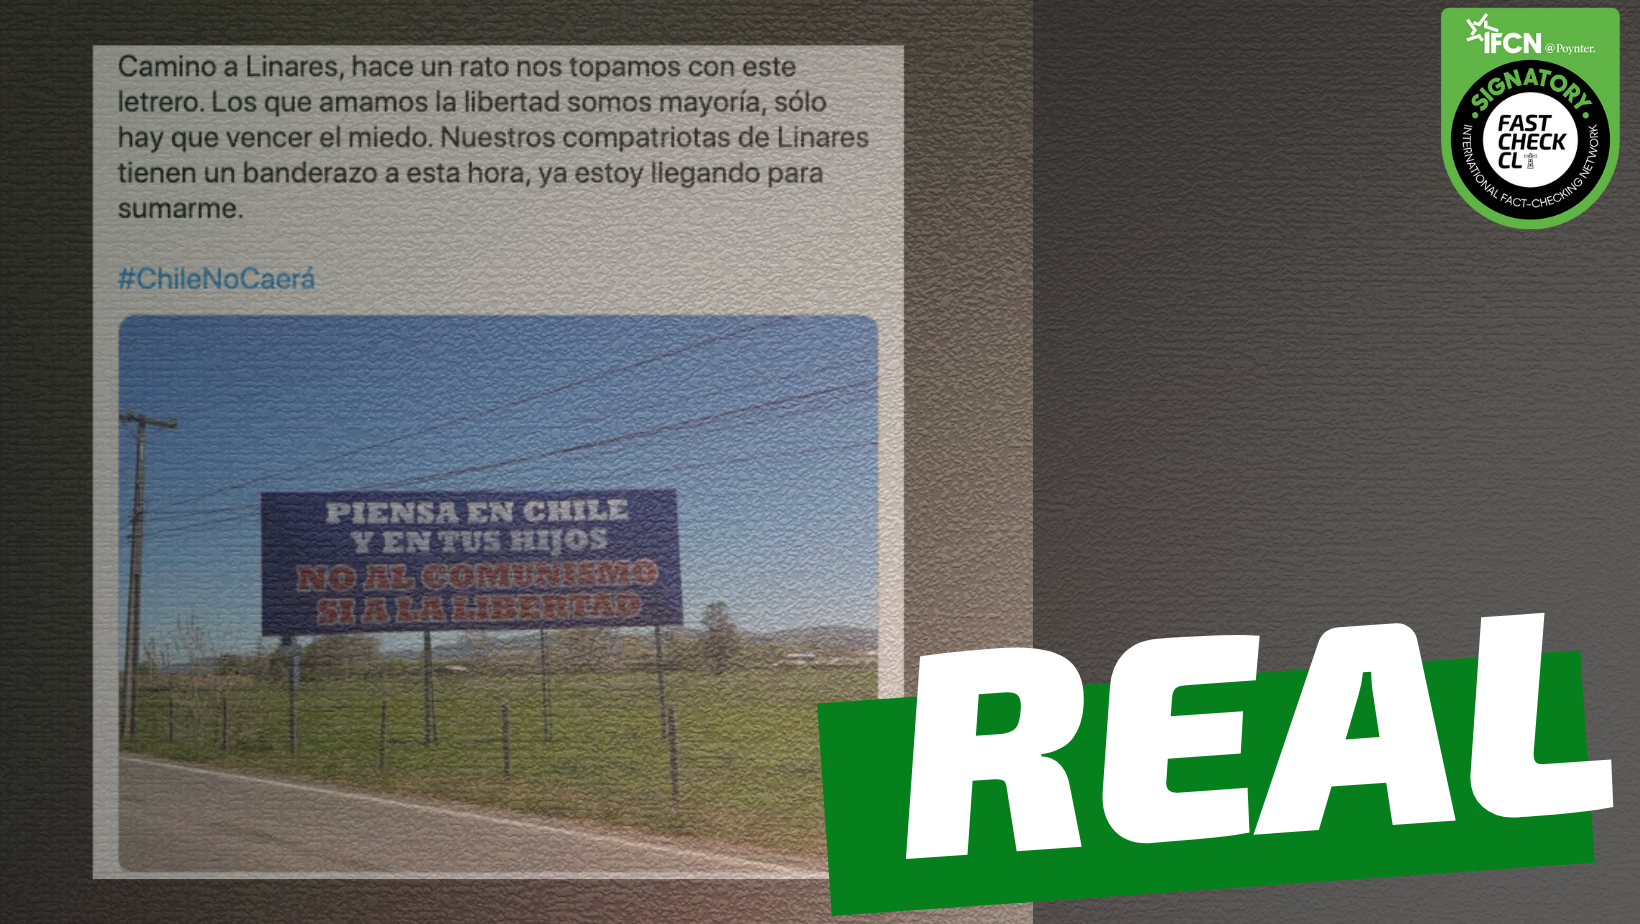 You are currently viewing Cartel que dice: “Piensa en Chile y en tus hijos. No al comunismo, s铆 a la libertad”: #Real